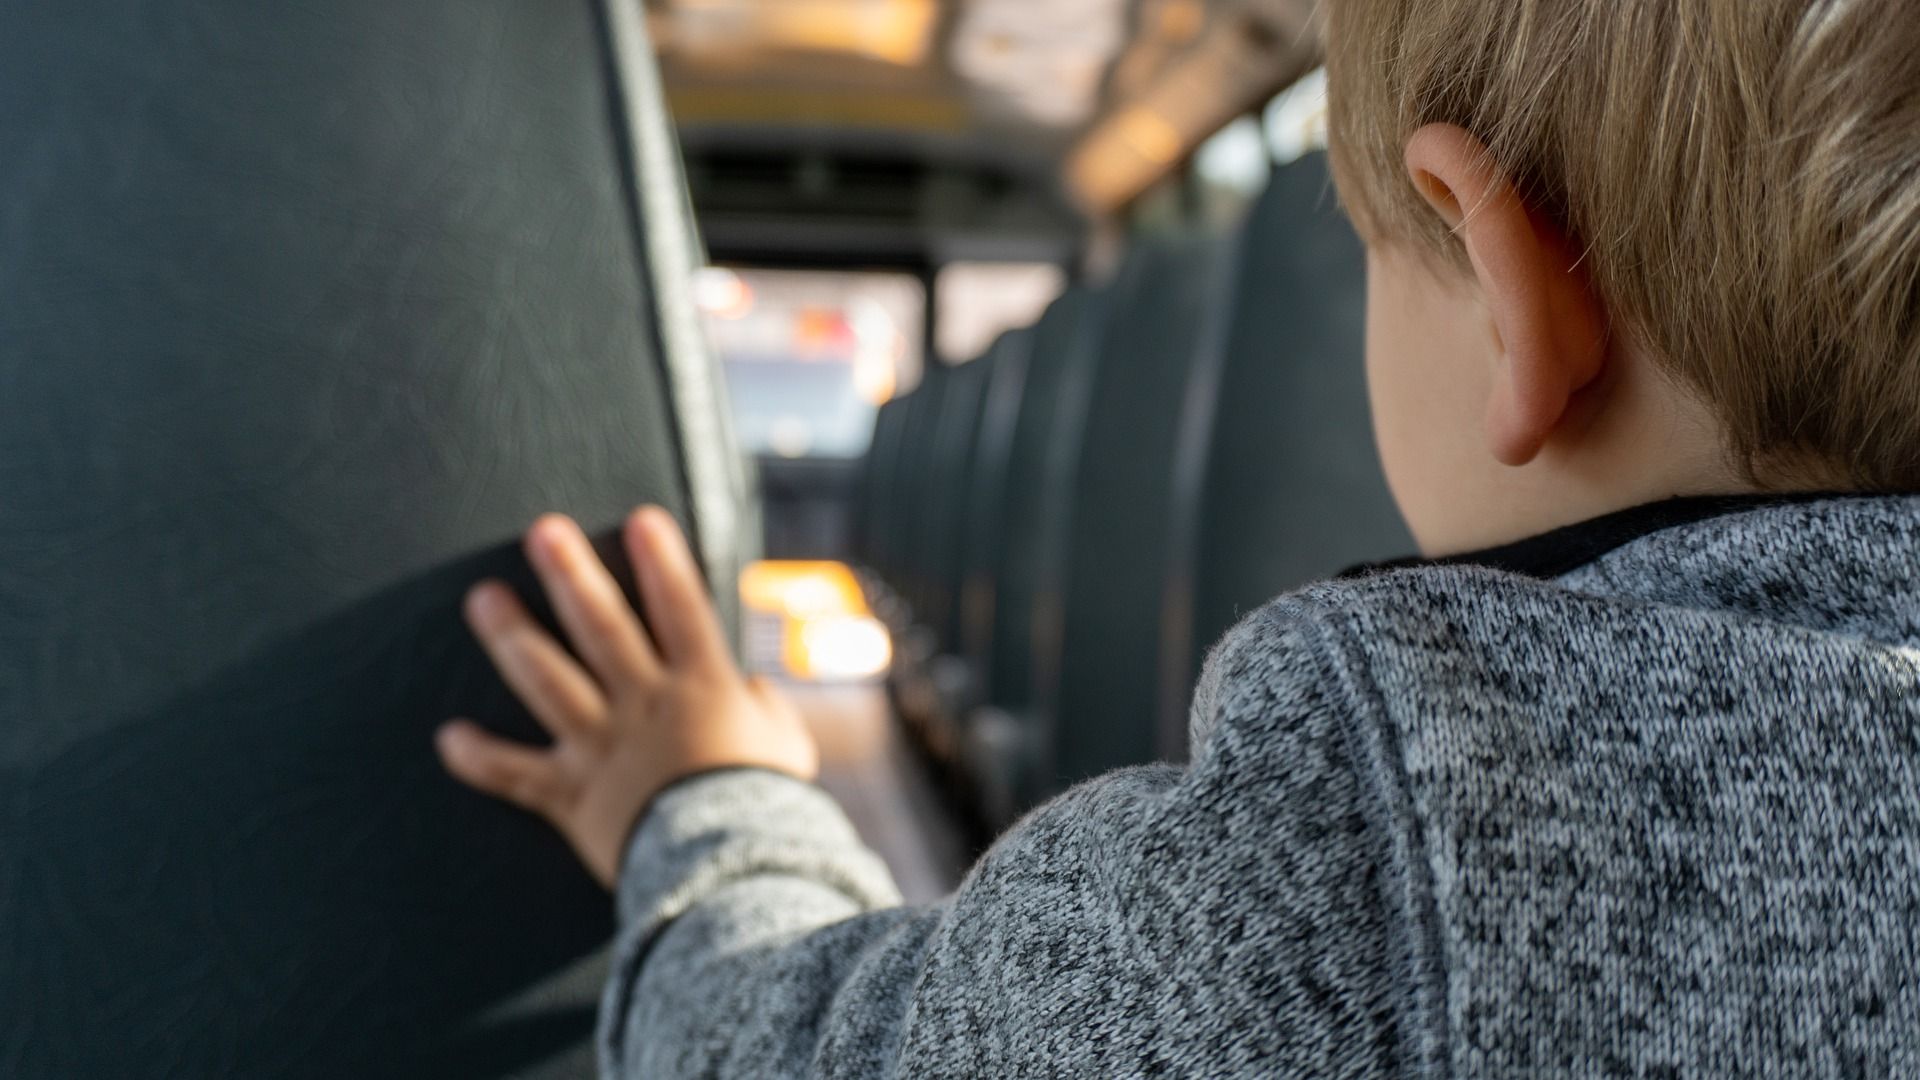 Niño olividado autocar escolar / Pixabay